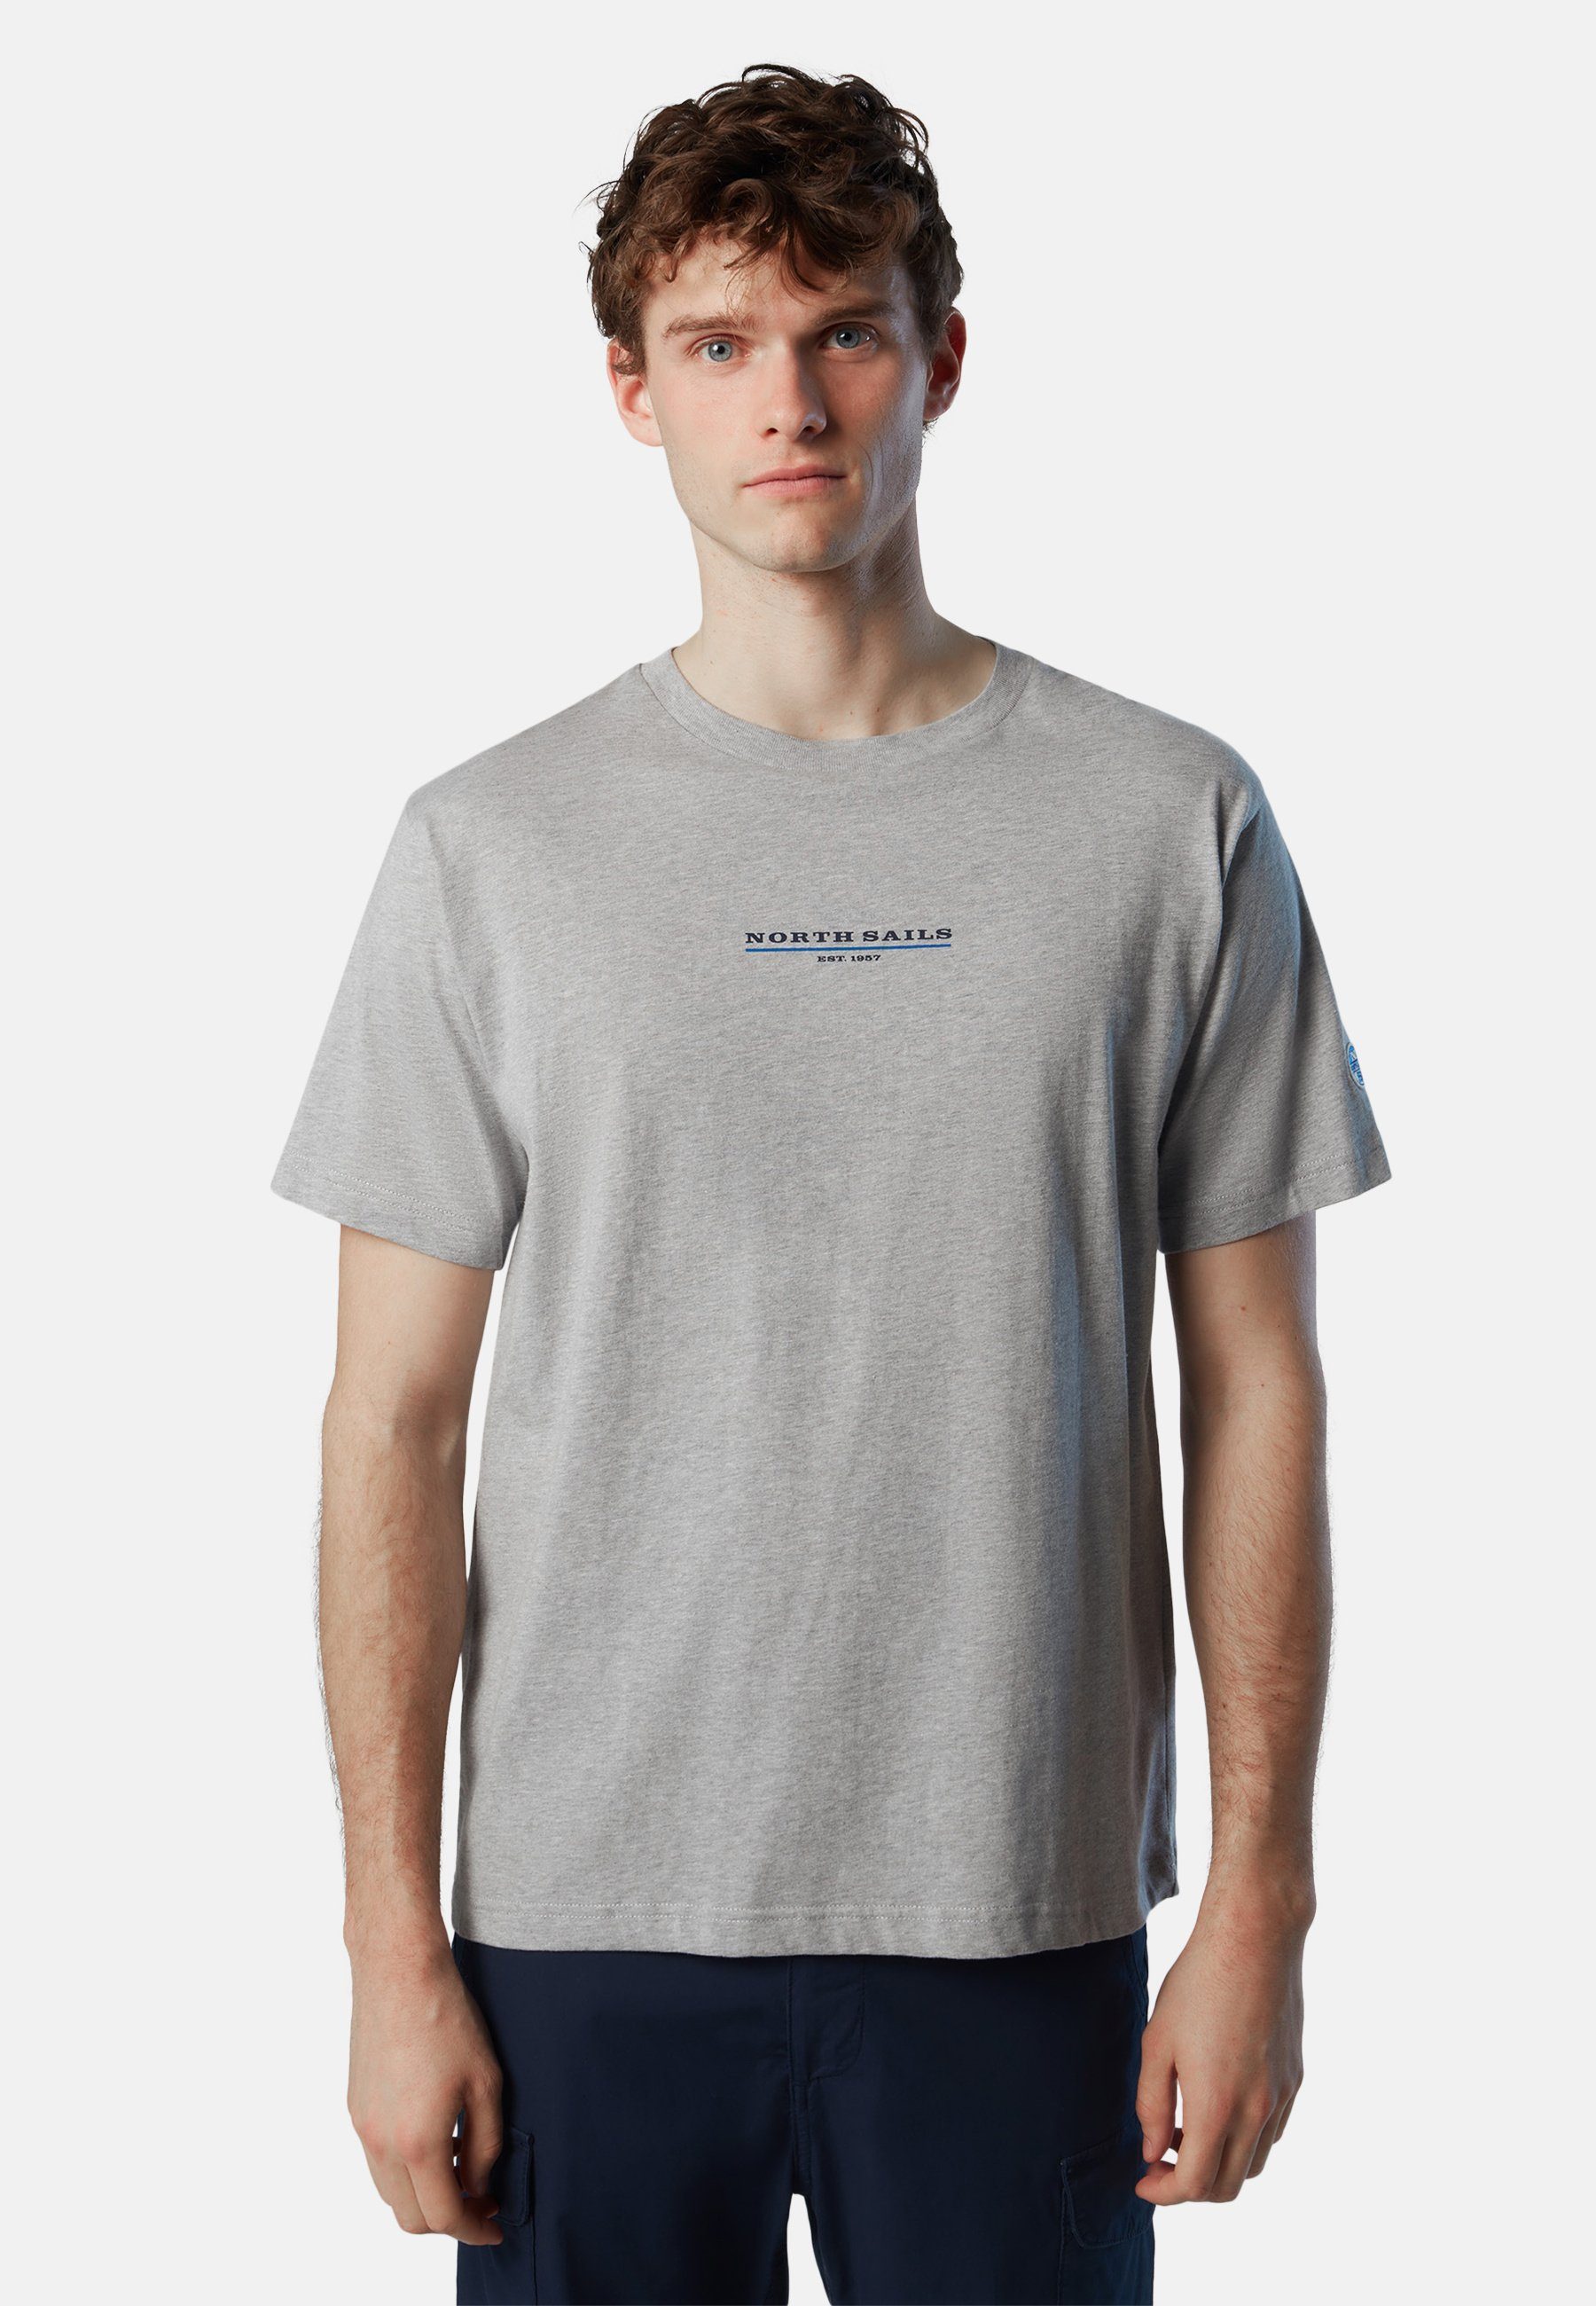 T-Shirt Brustaufdruck grey mit T-Shirt North Sails